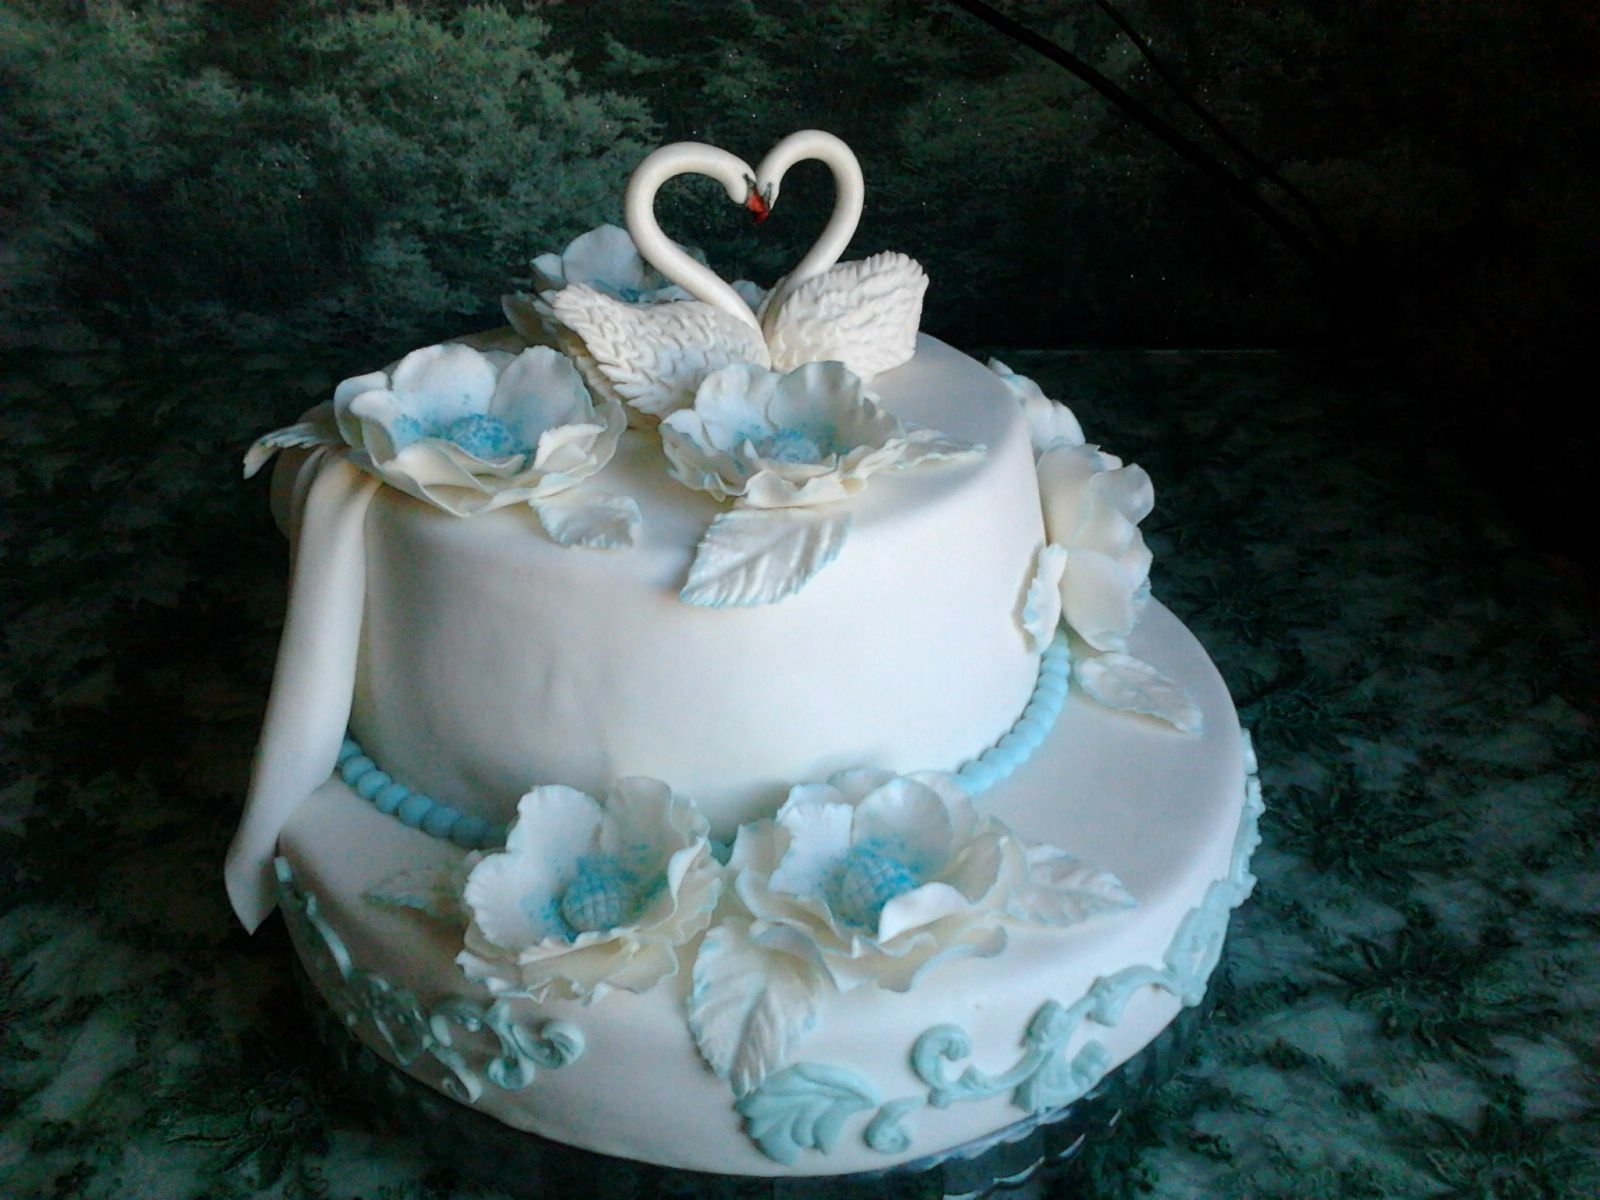 Свадебный торт одноярусный с кольцами